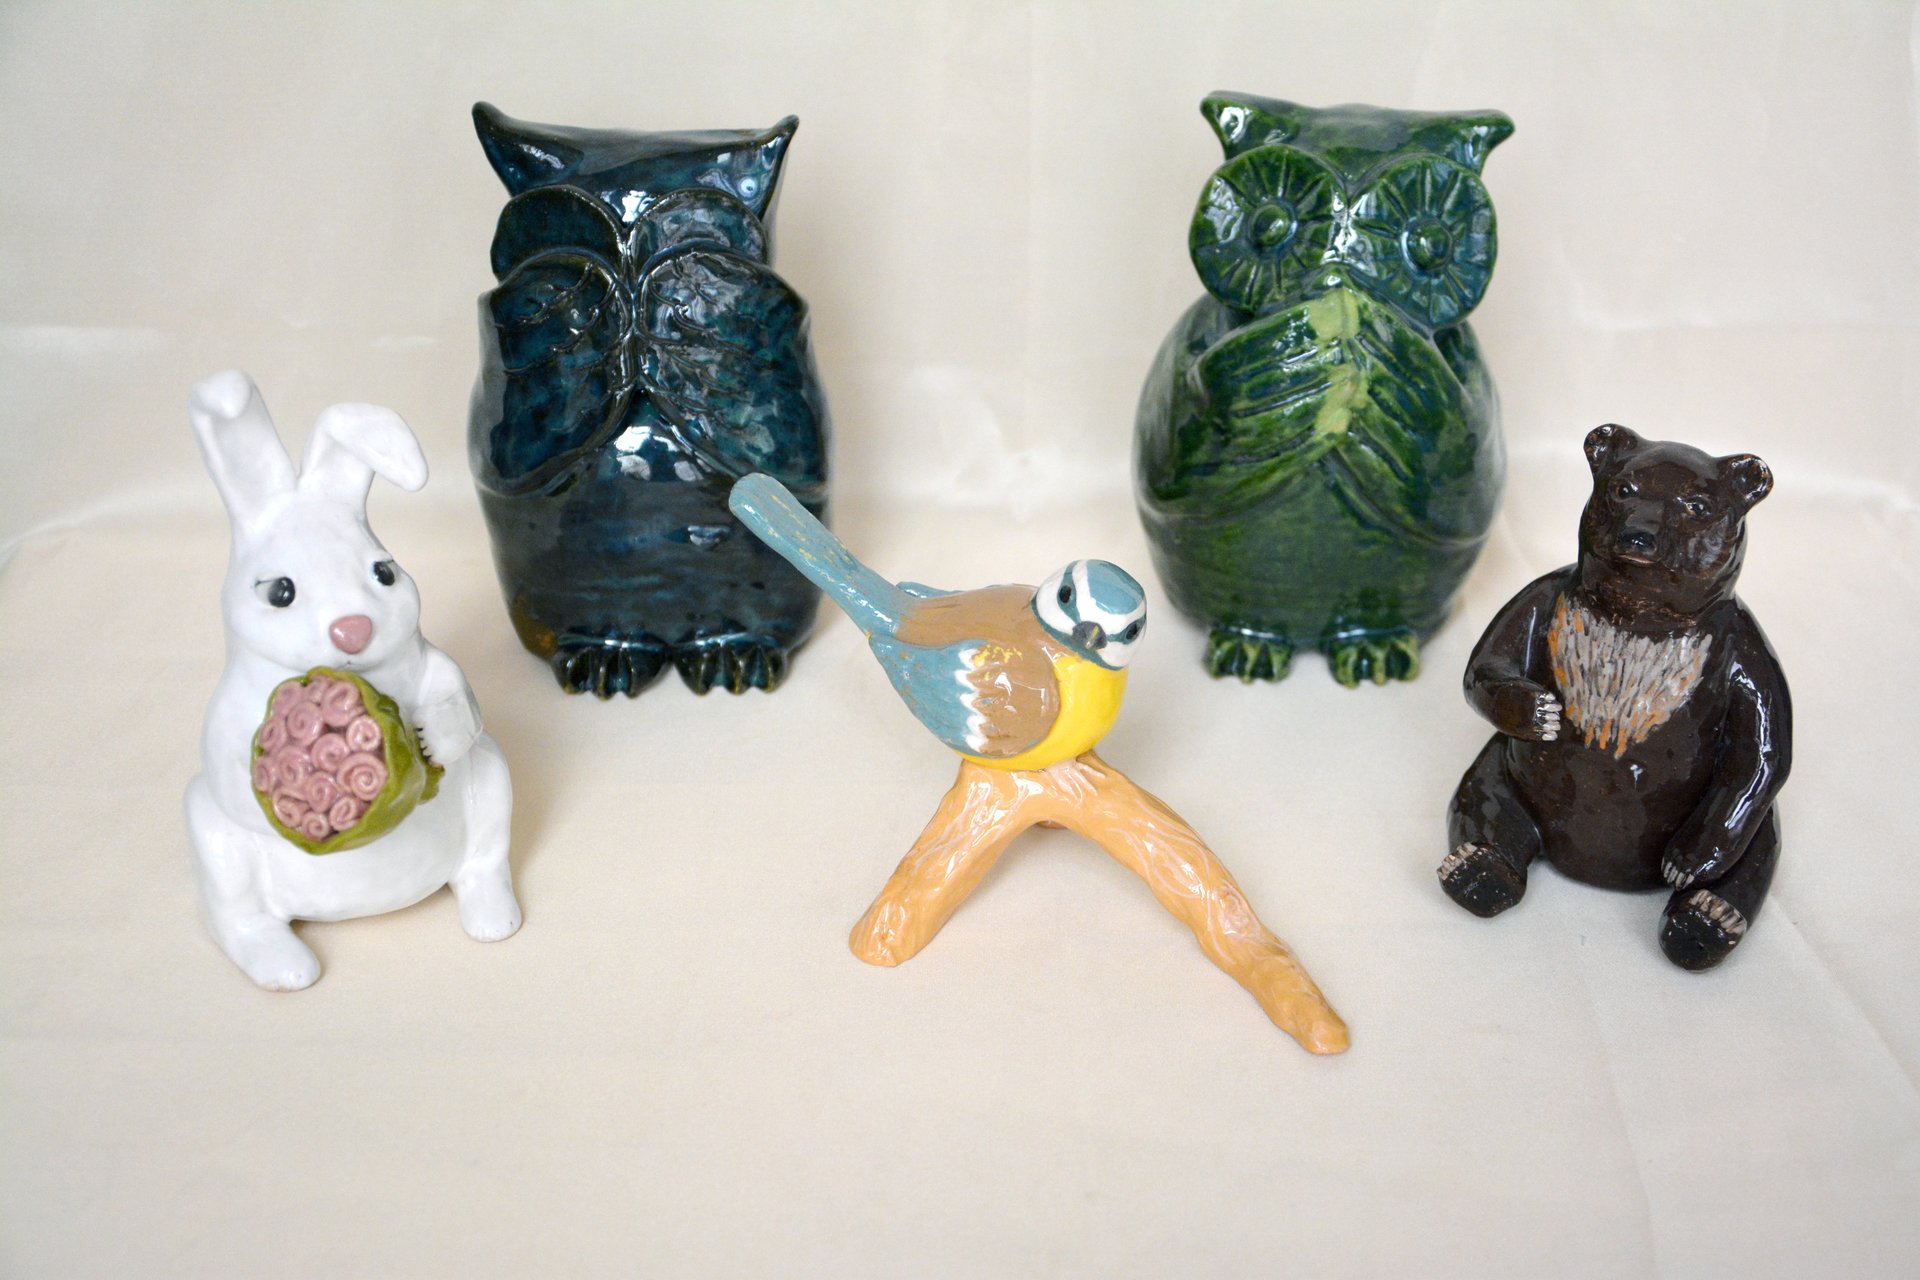 Ceramic figurines of animals and birds